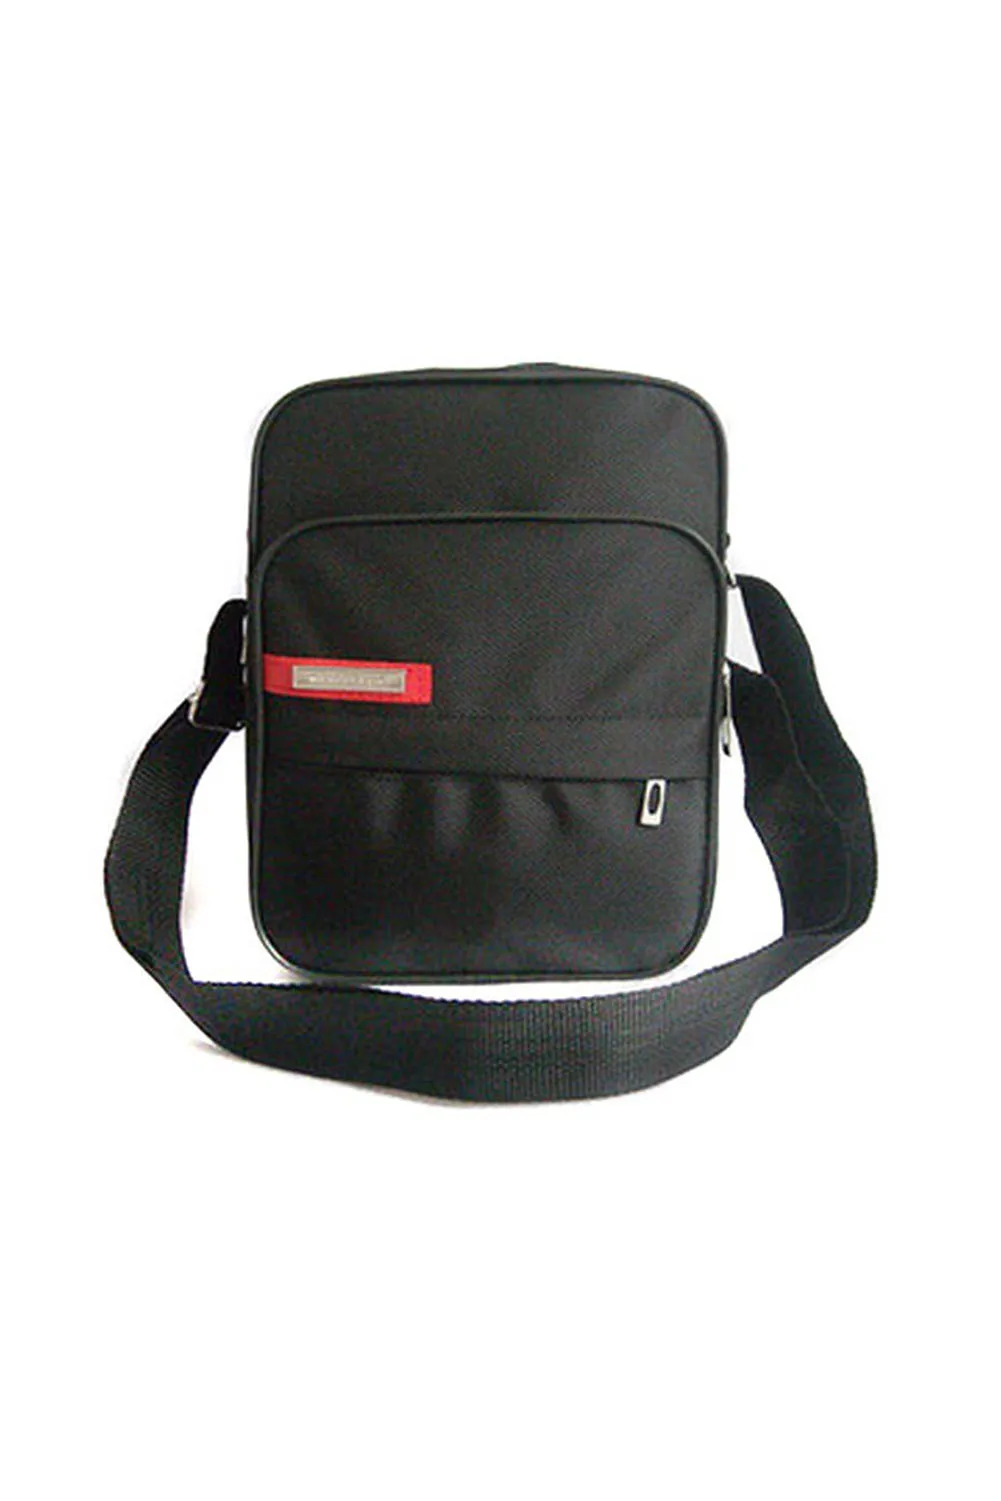 Size M Mens Vertical PU Shoulder Bag Messenger Bag Black